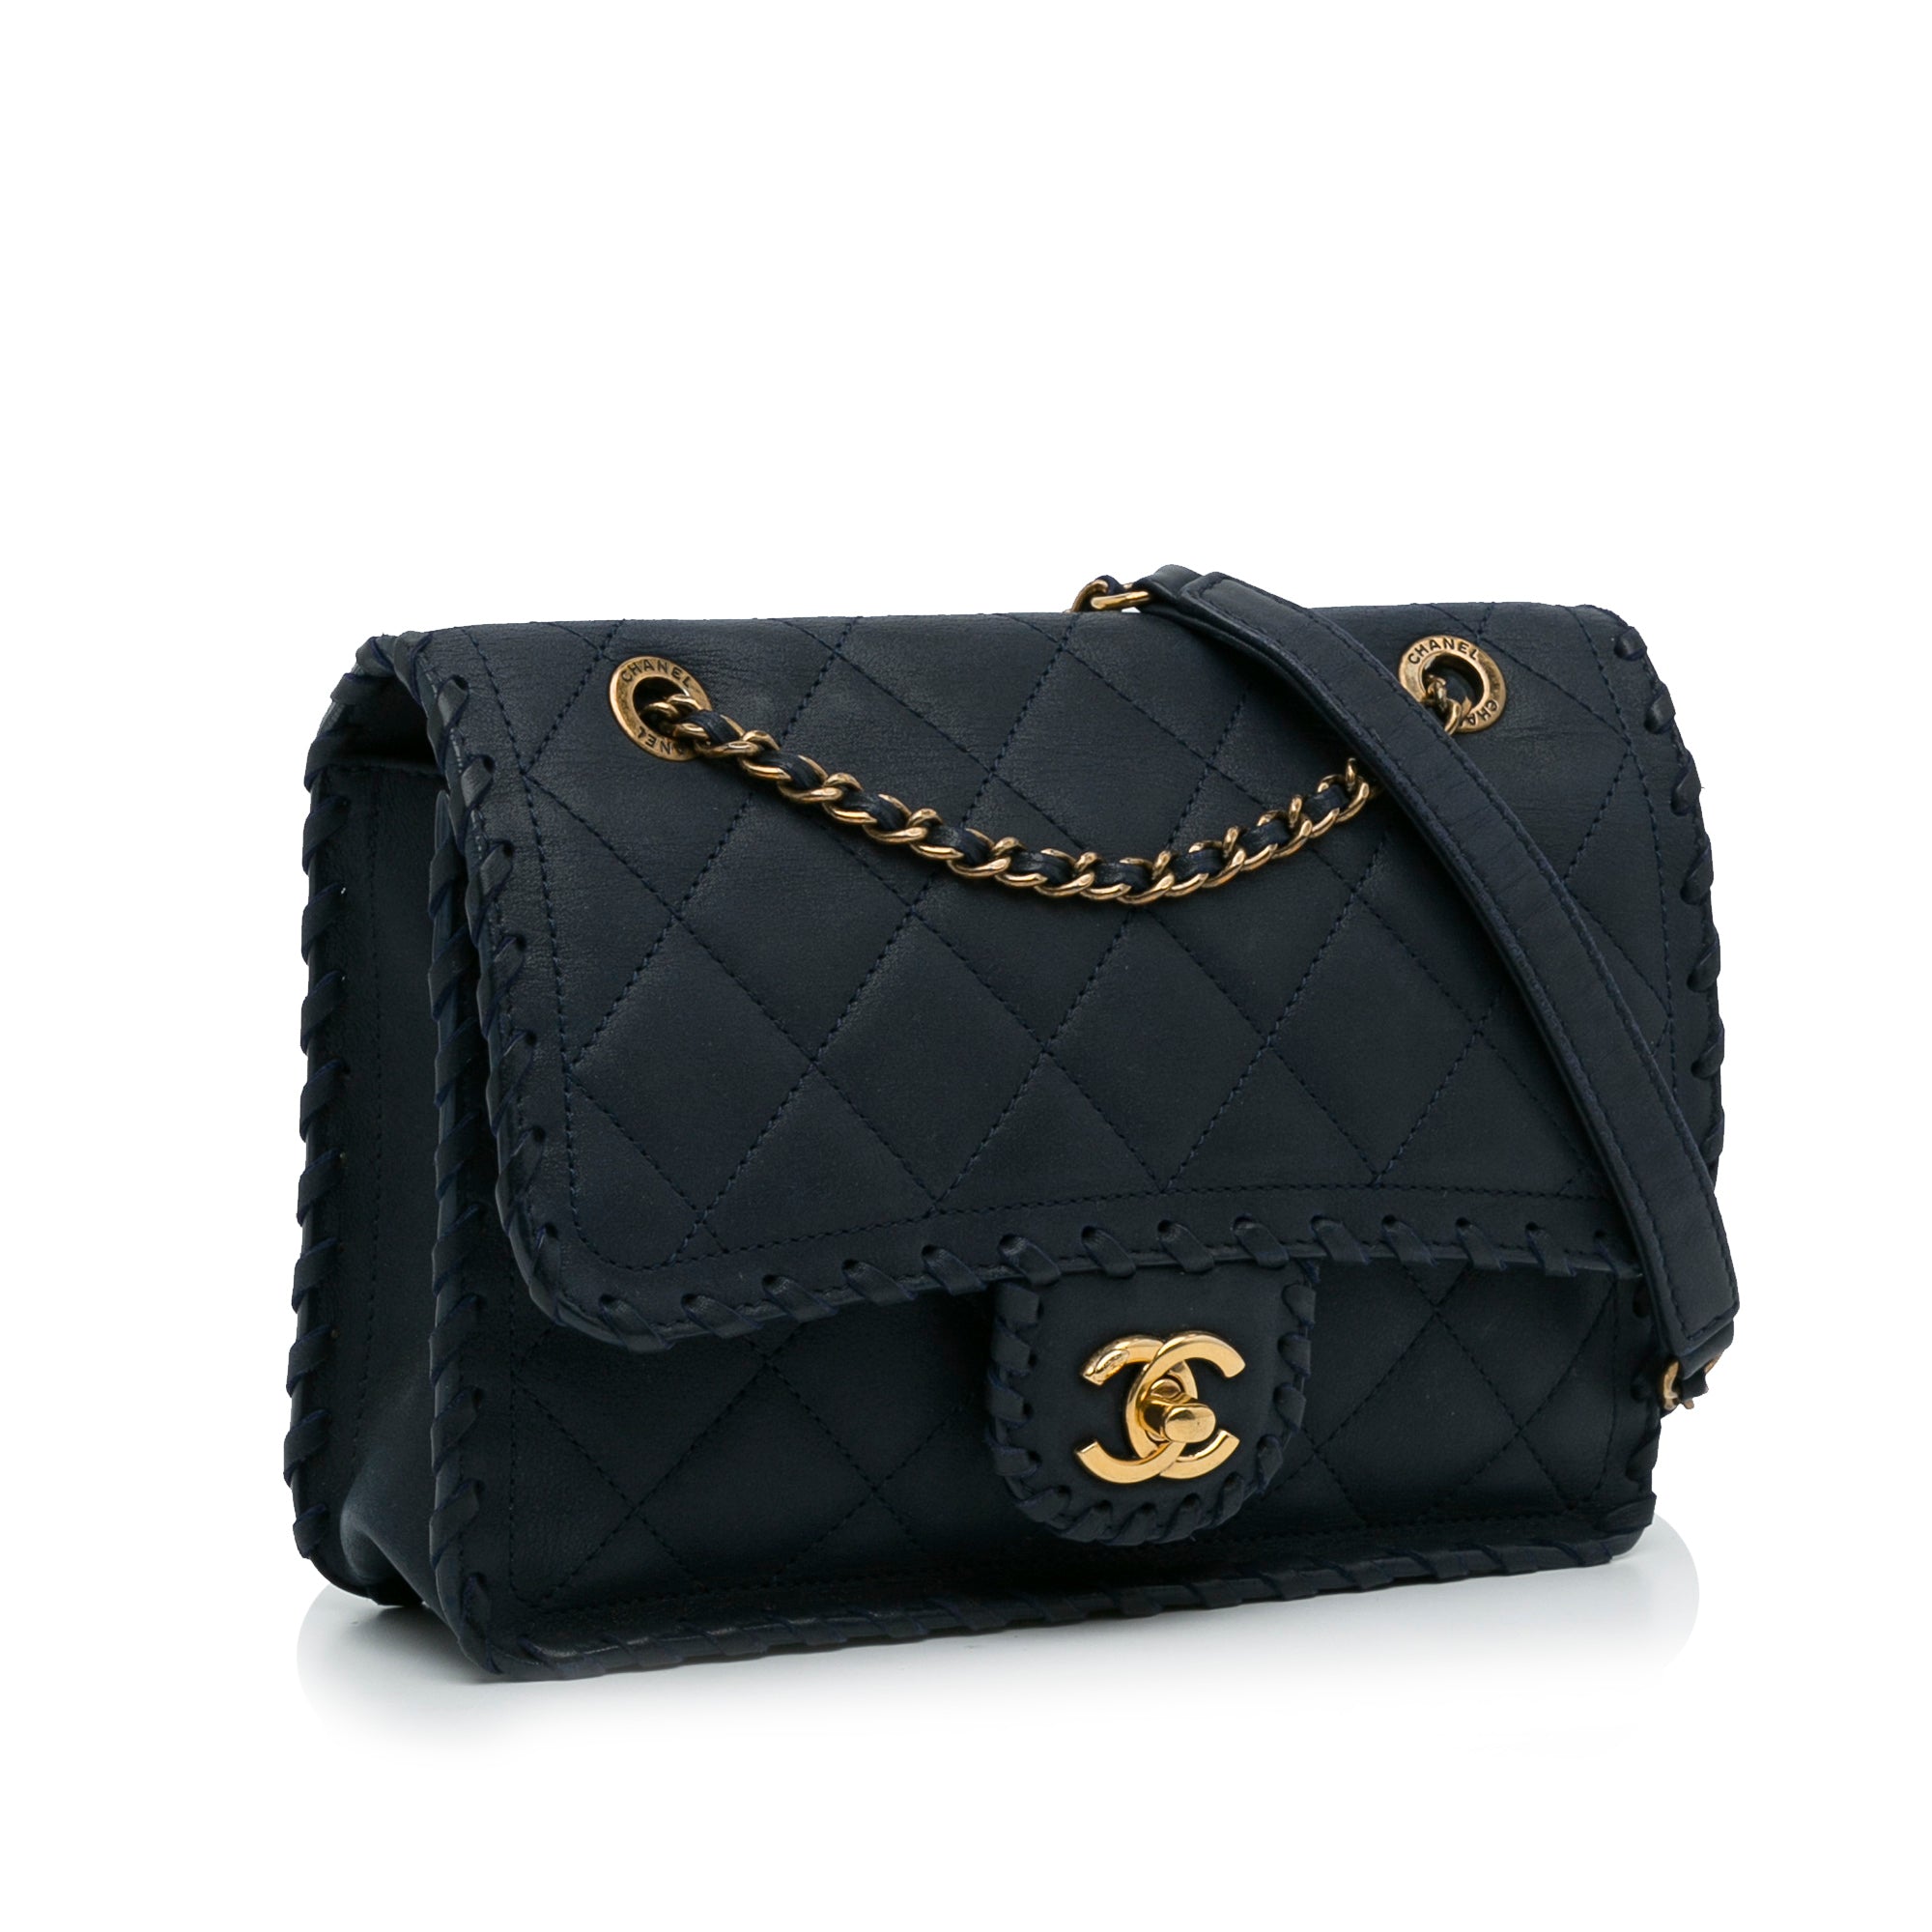 Reviving a Chanel Handbag